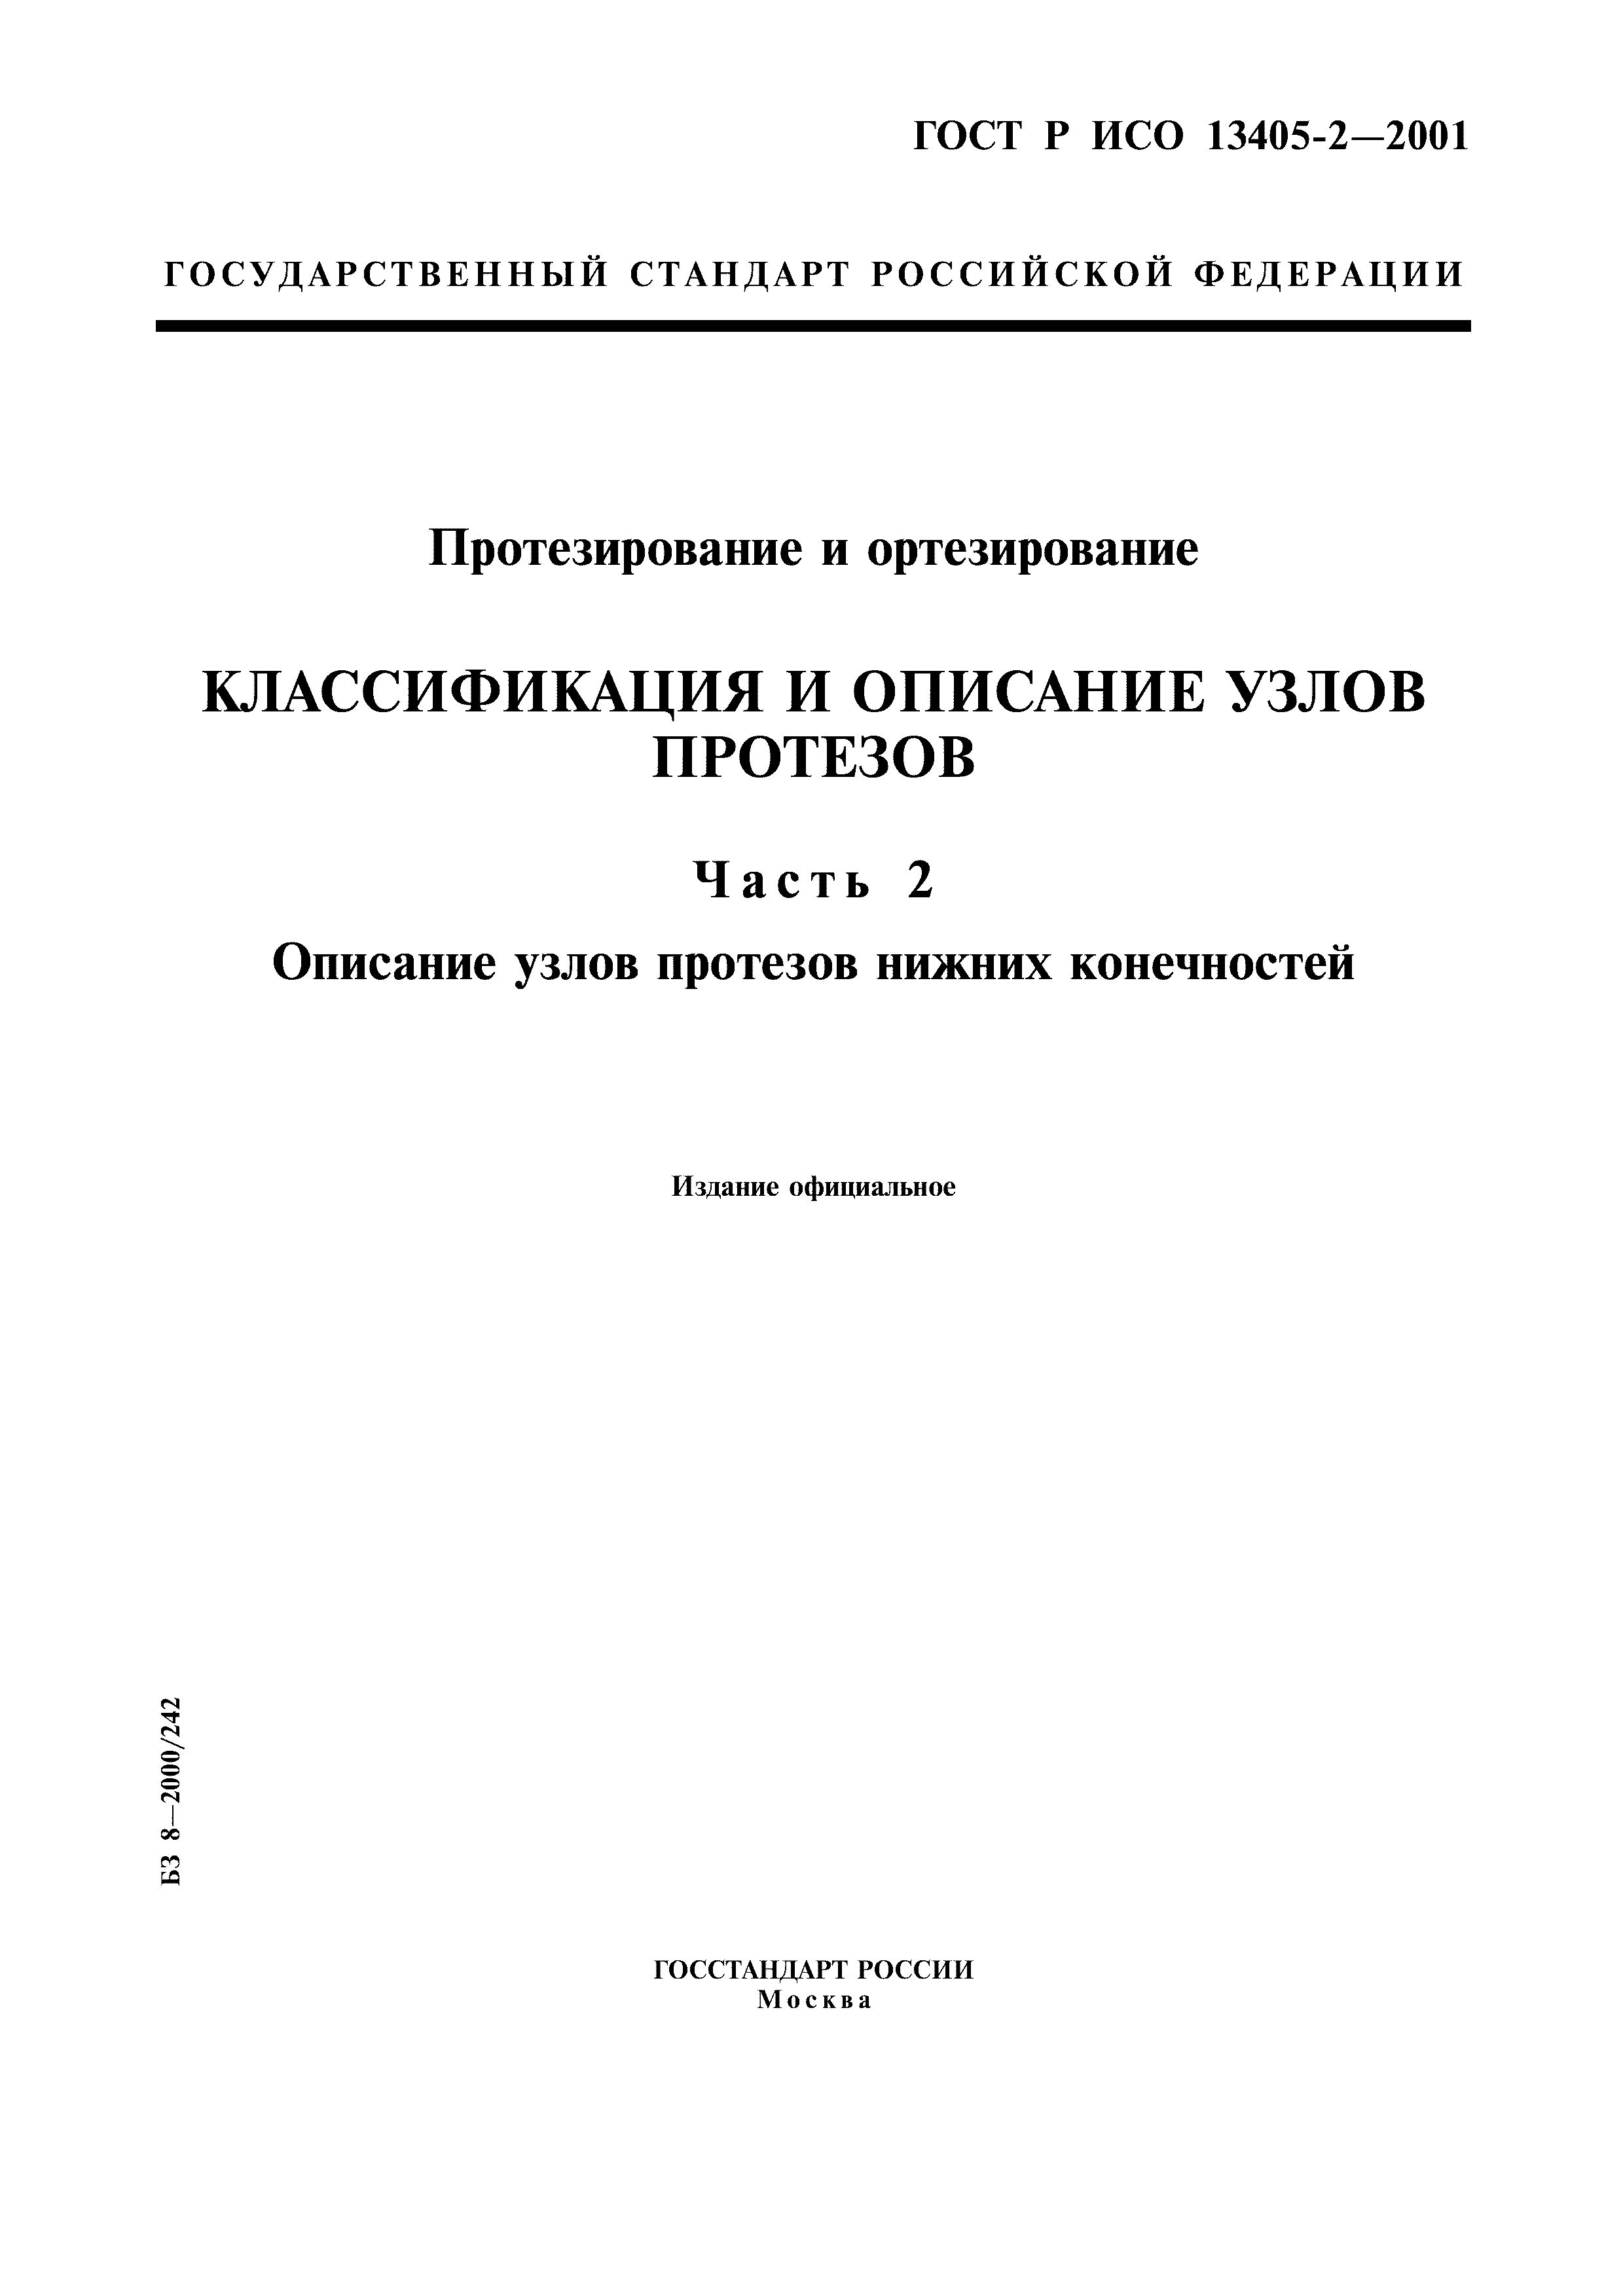 ГОСТ Р ИСО 13405-2-2001